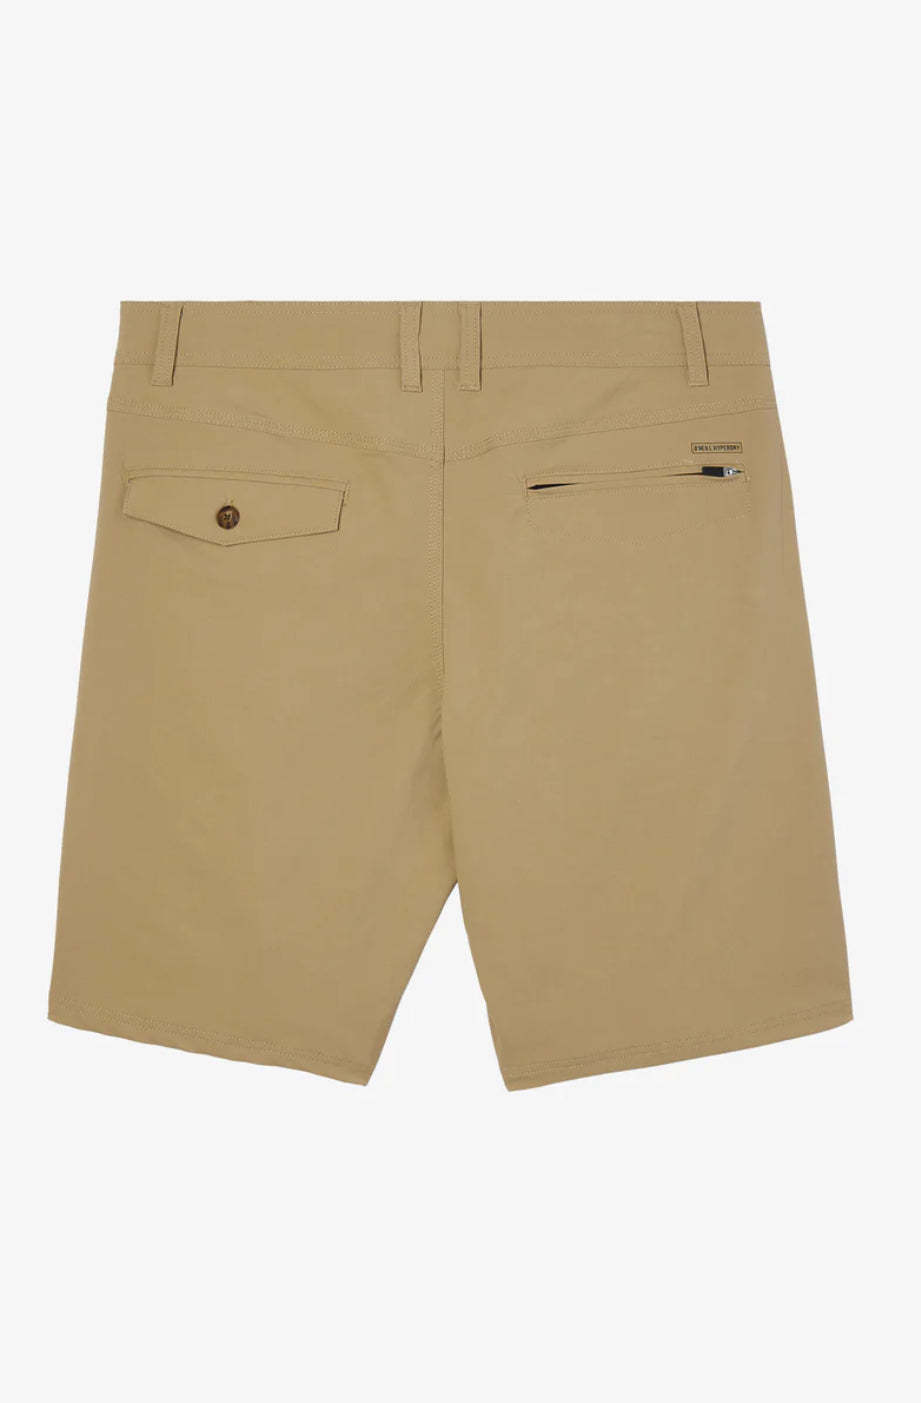 Stockton 20” Hybrid Shorts